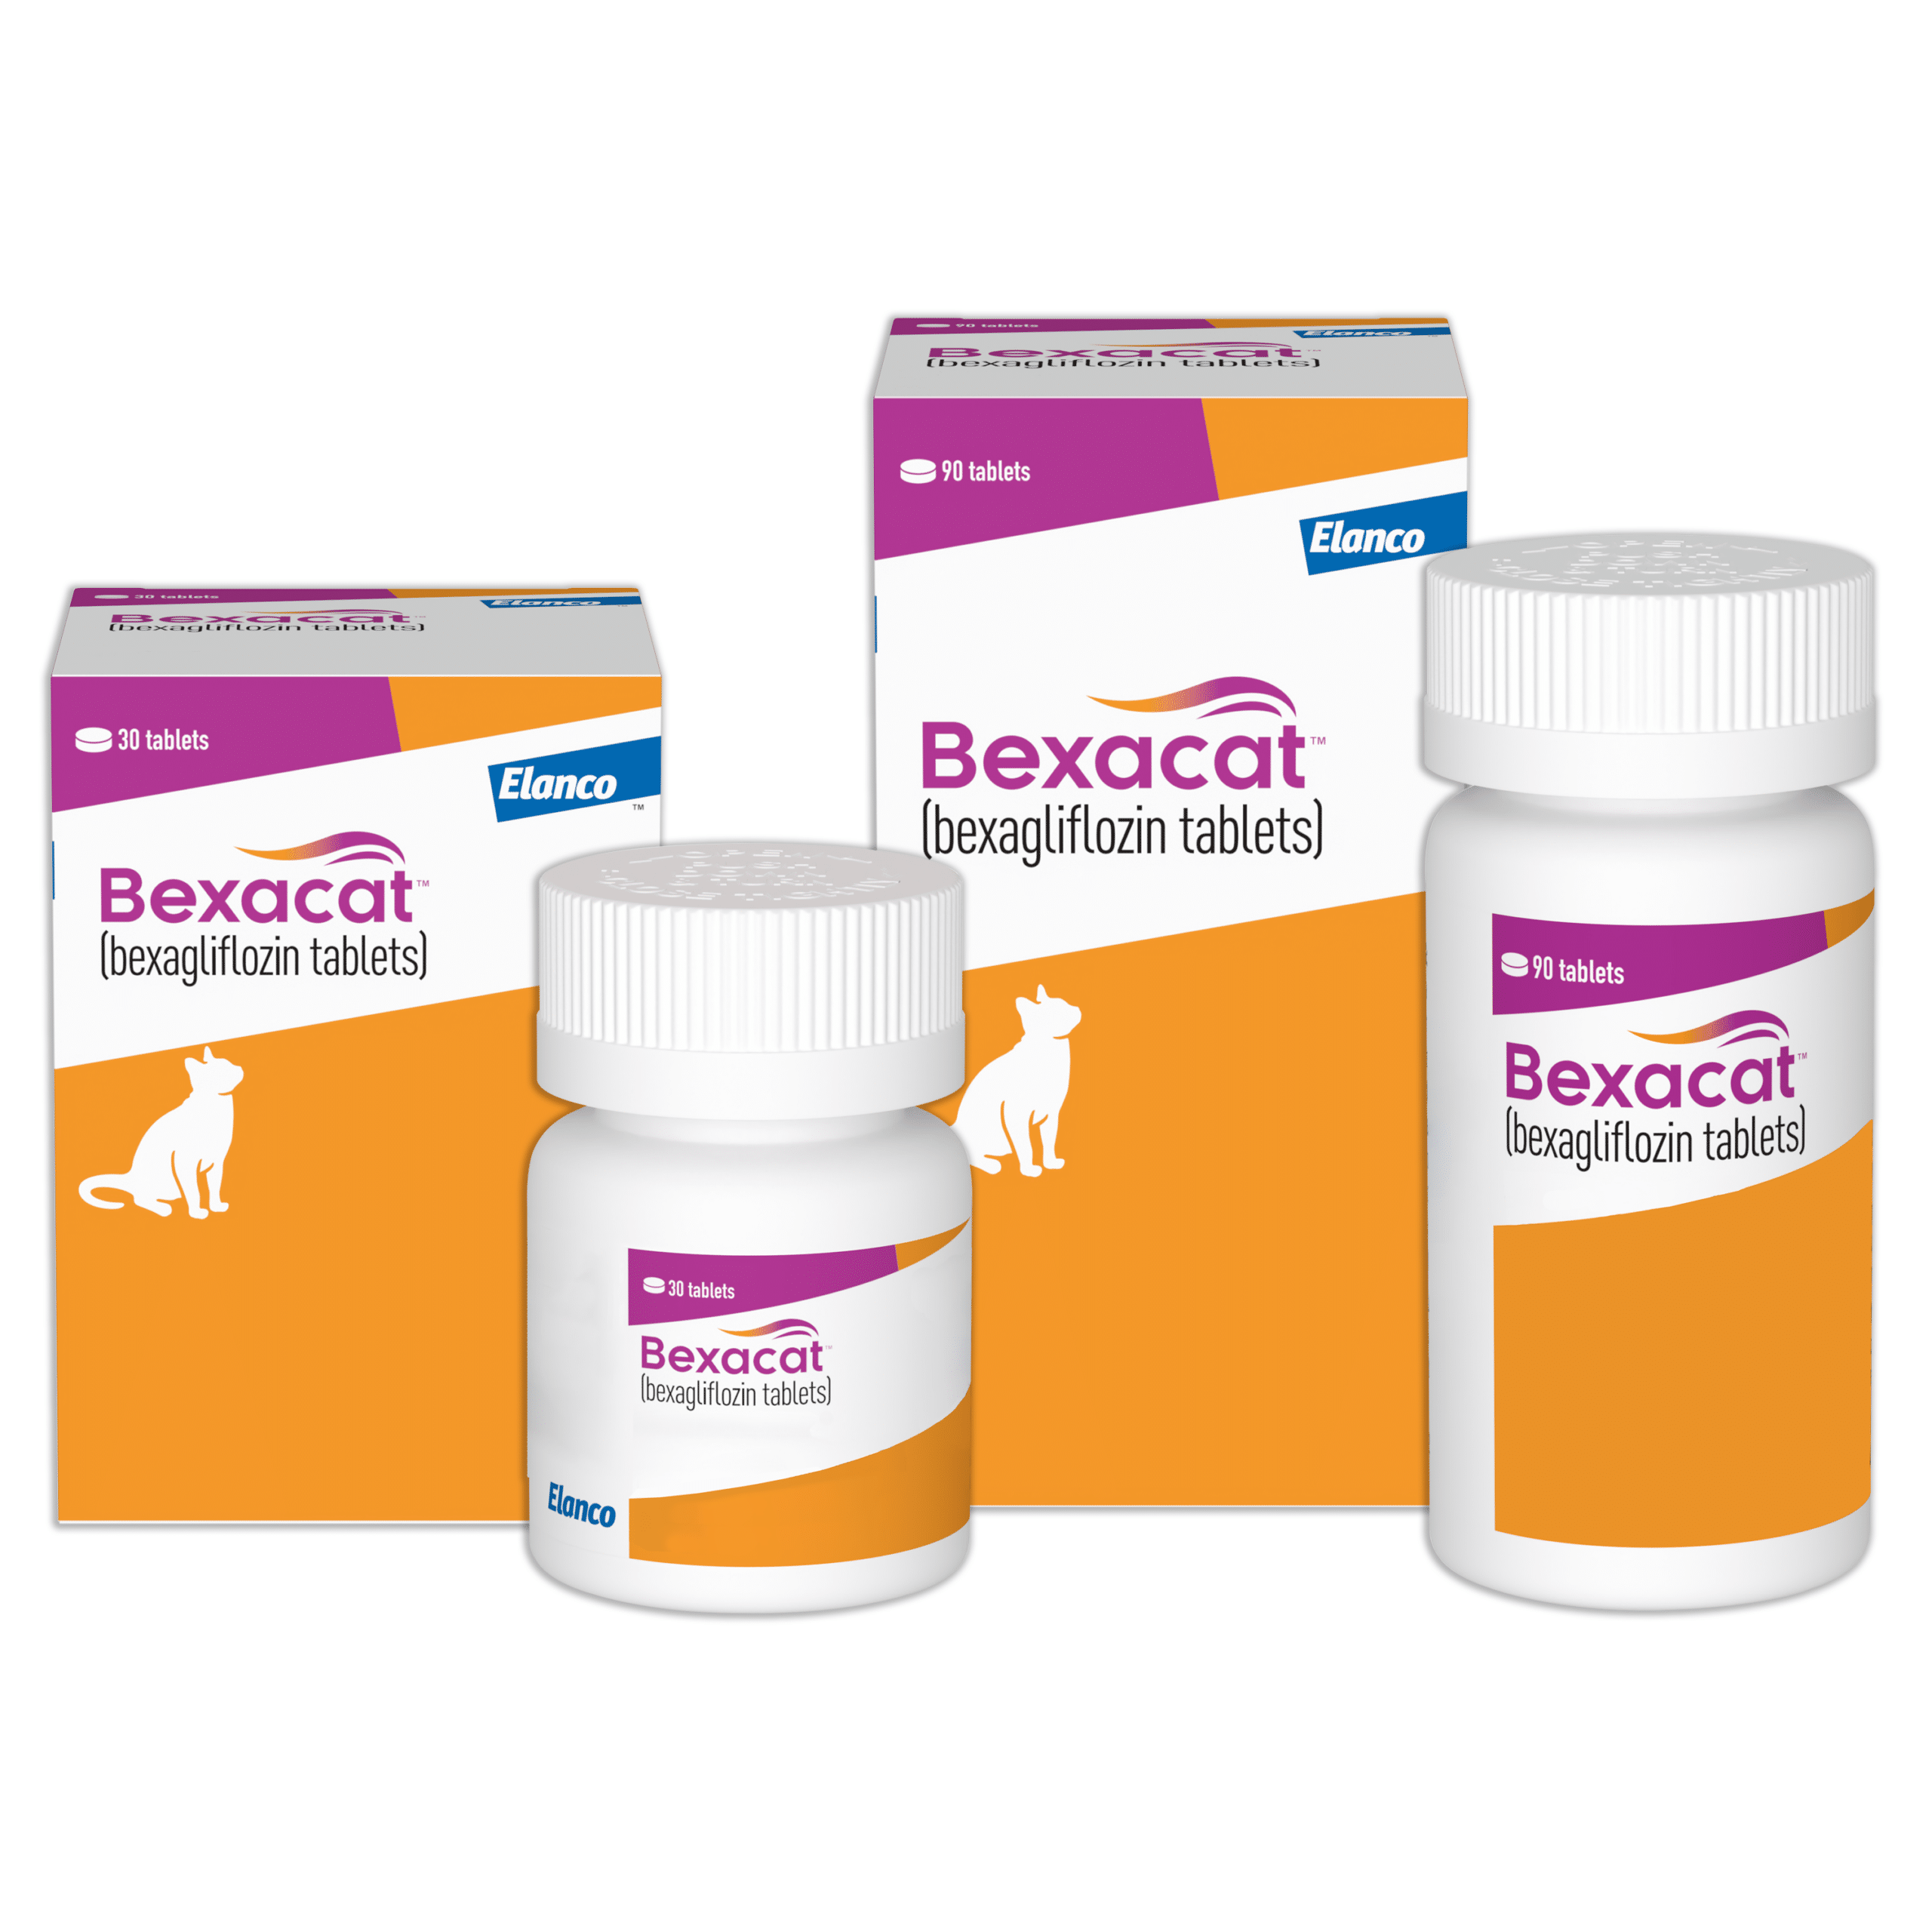 Bexacat™ (bexagliflozin tablets)